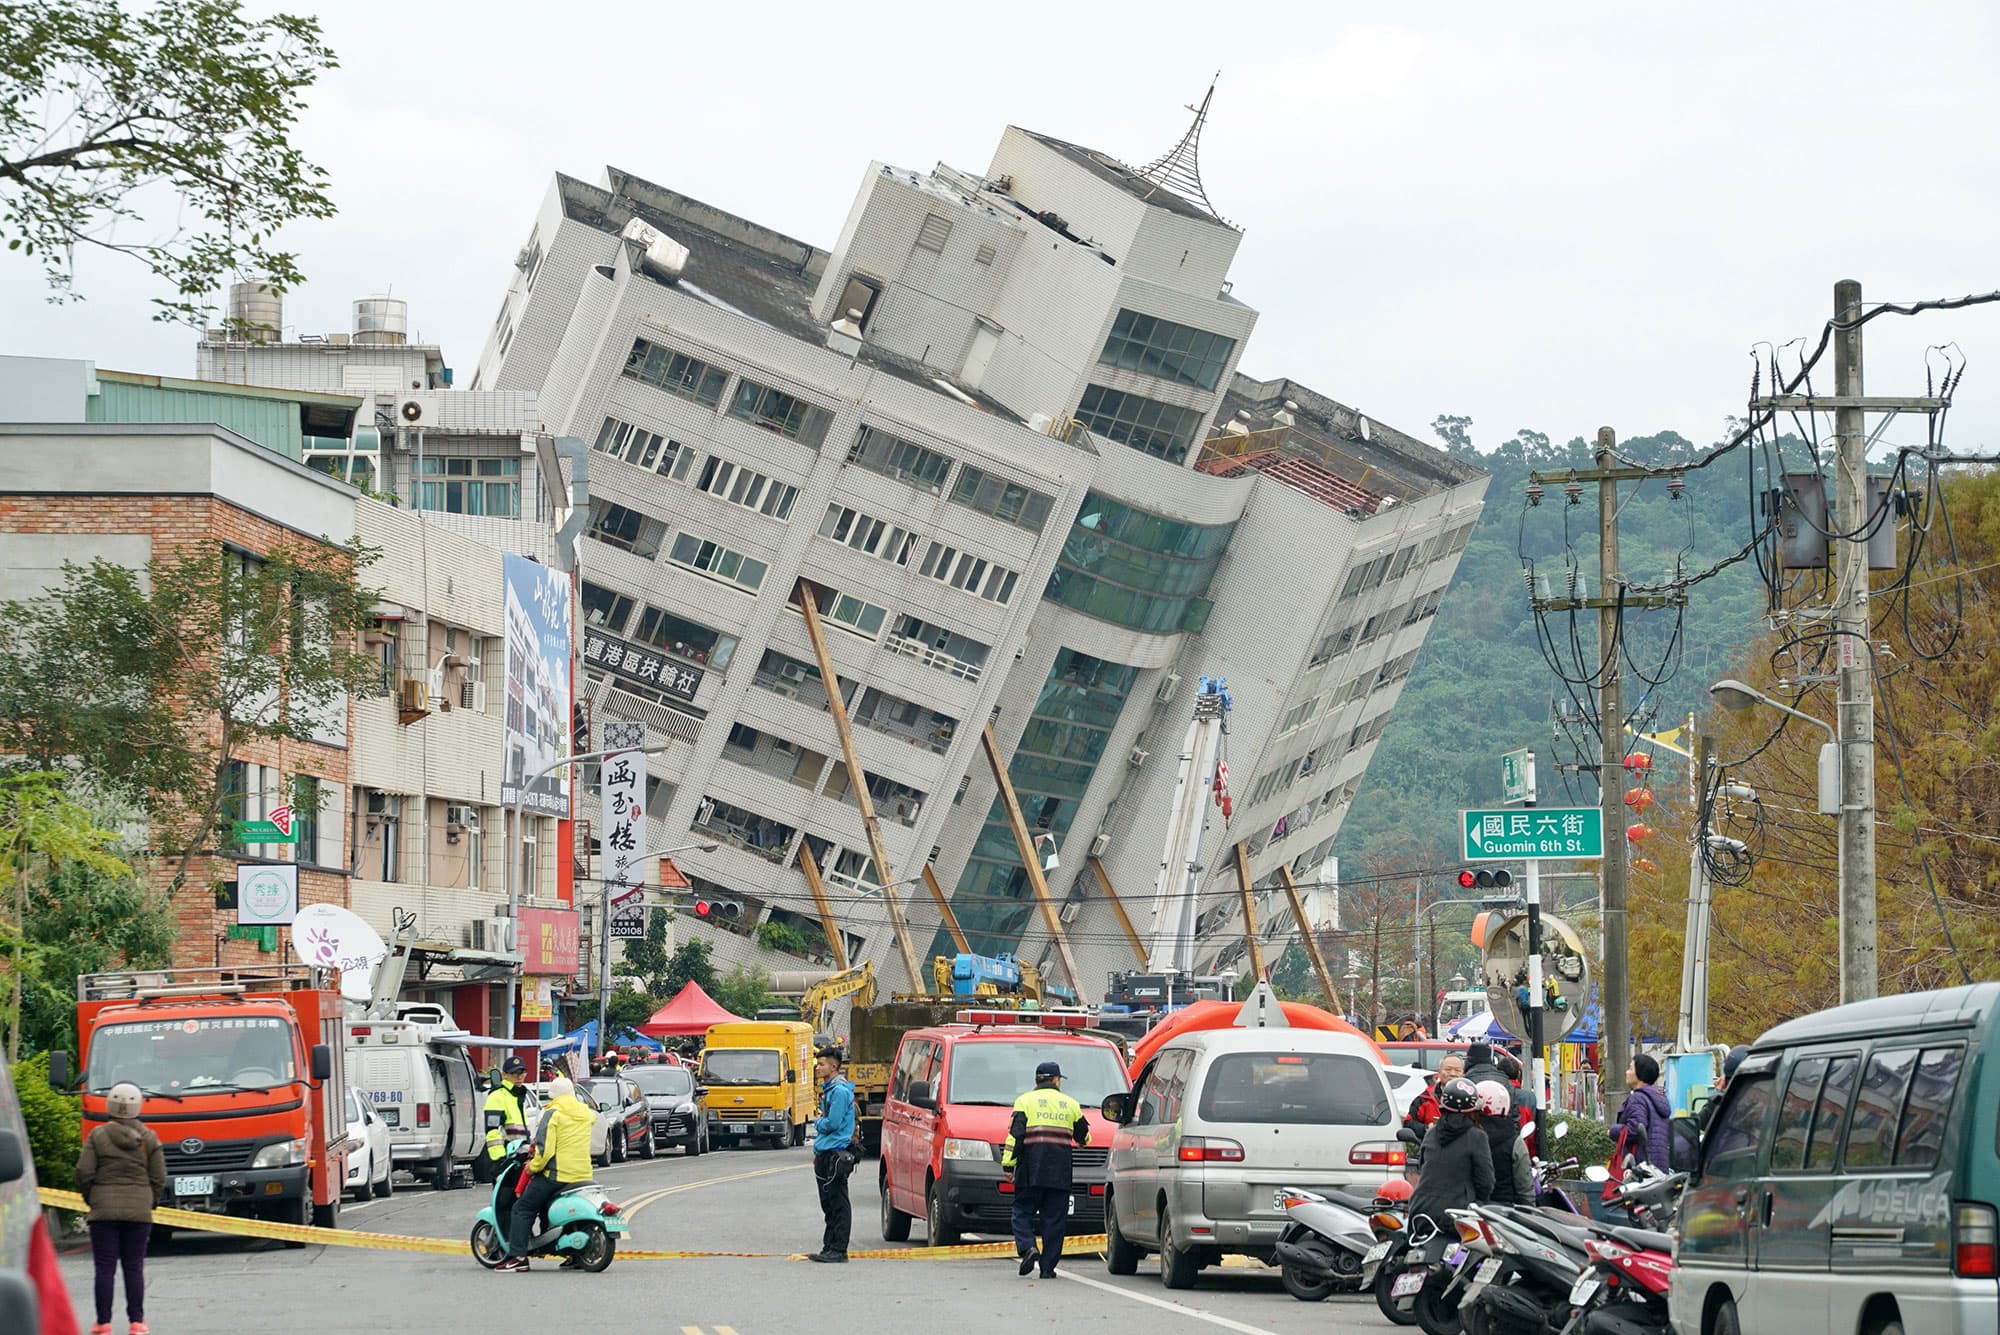 Фотографии землетрясений. Землетрясение Хуалянь. Гостиница Маршал Тайвань землетрясение. Тайвань землетрясение 2018. Землетрясение на Тайване 1999.